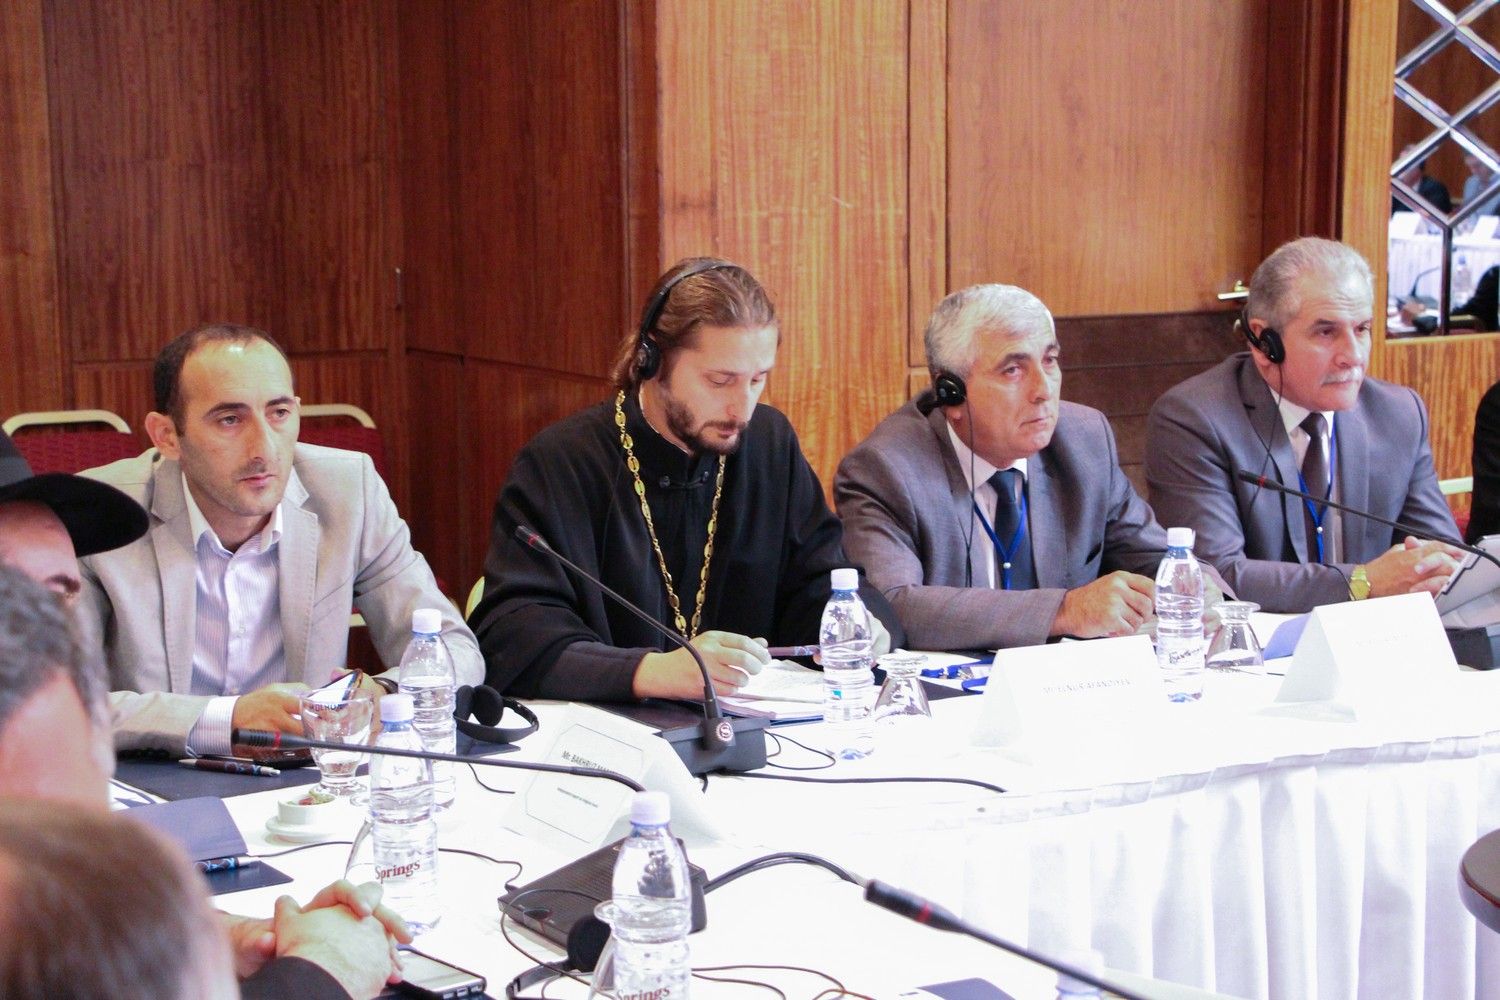 Секретарь Бакинского Епархиального Управления принял участие в конференции «Религия или свобода вероисповедания», прошедшей в г. Тбилиси.